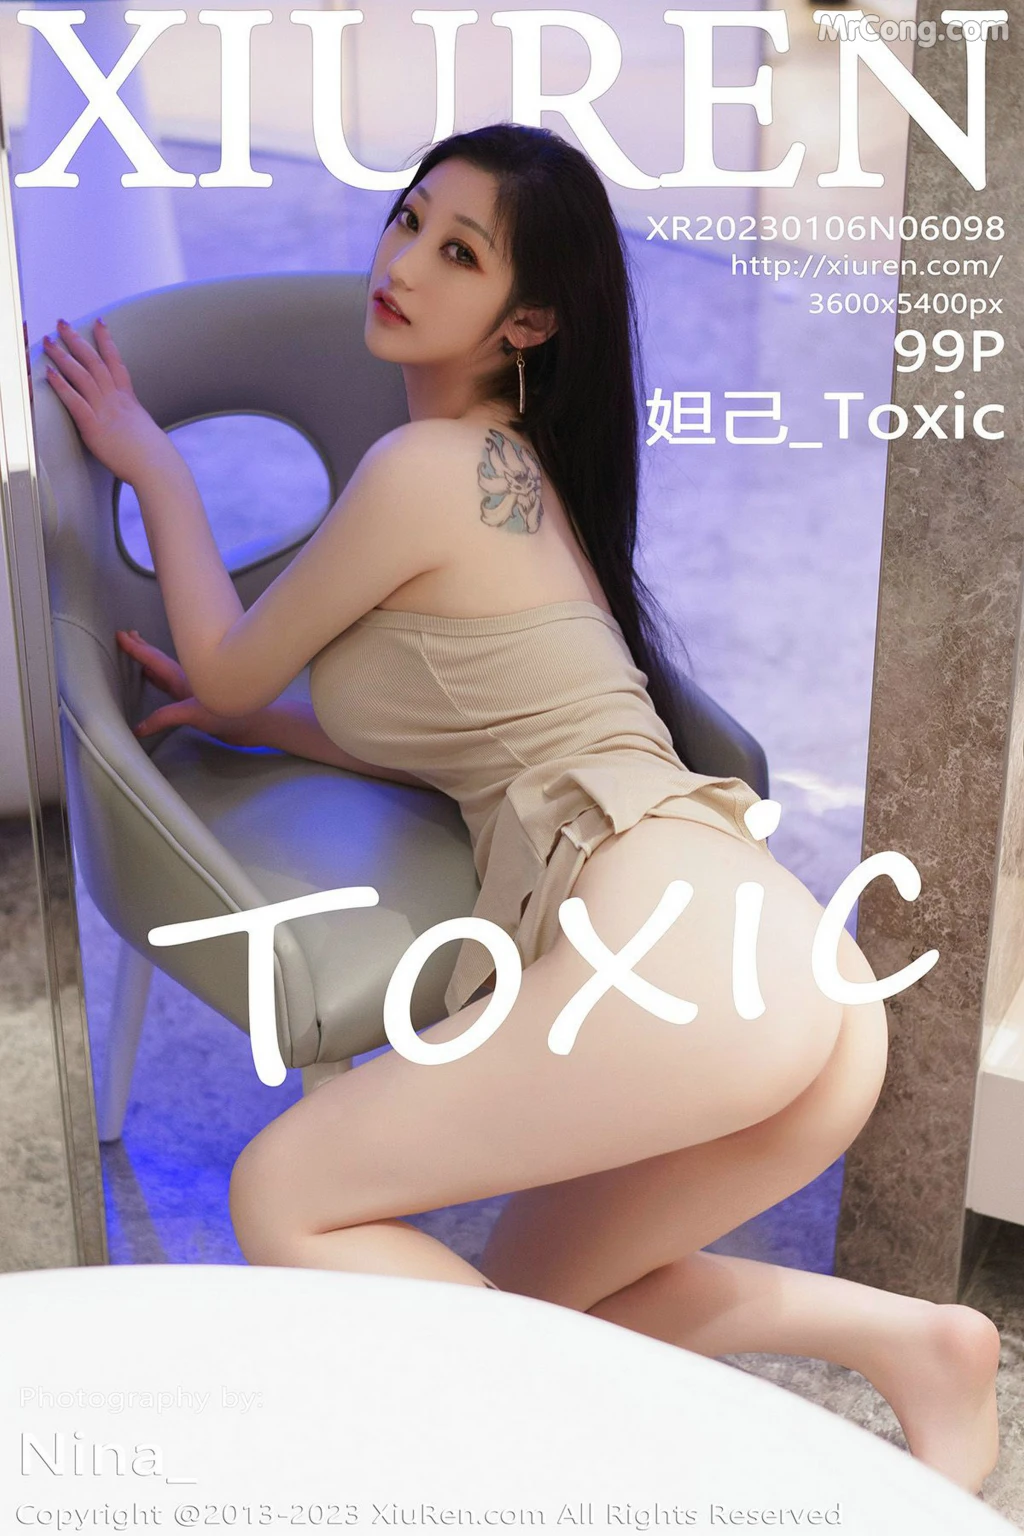 XIUREN No.6098: Daji_Toxic (妲己_Toxic) (100 photos)